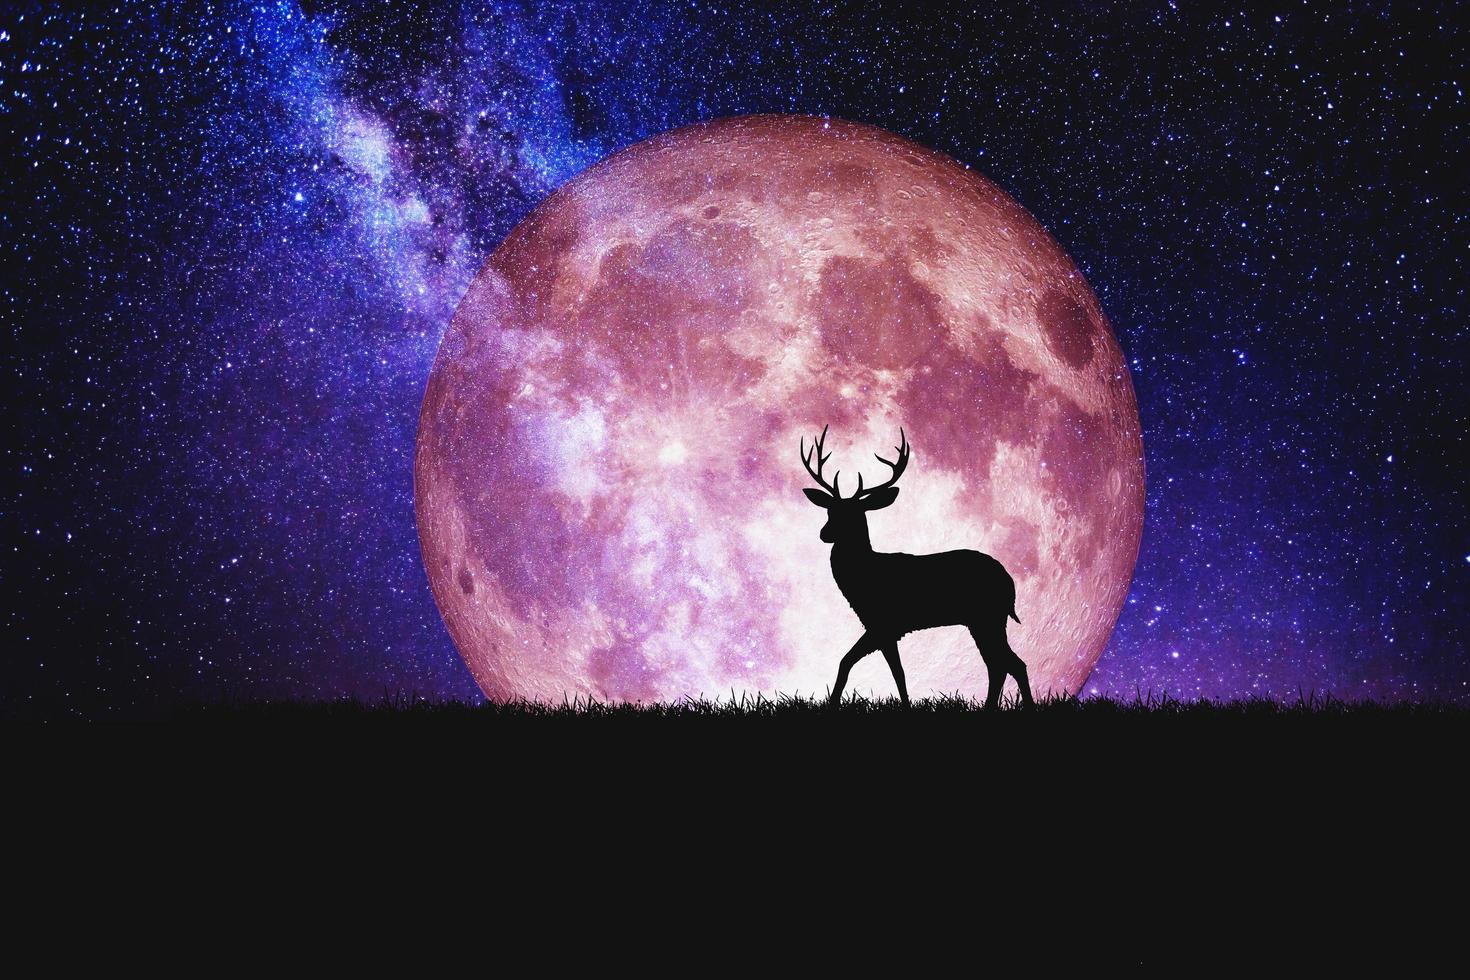 nacht herten silhouet tegen de achtergrond van een grote maan element van de foto is versierd door nasa